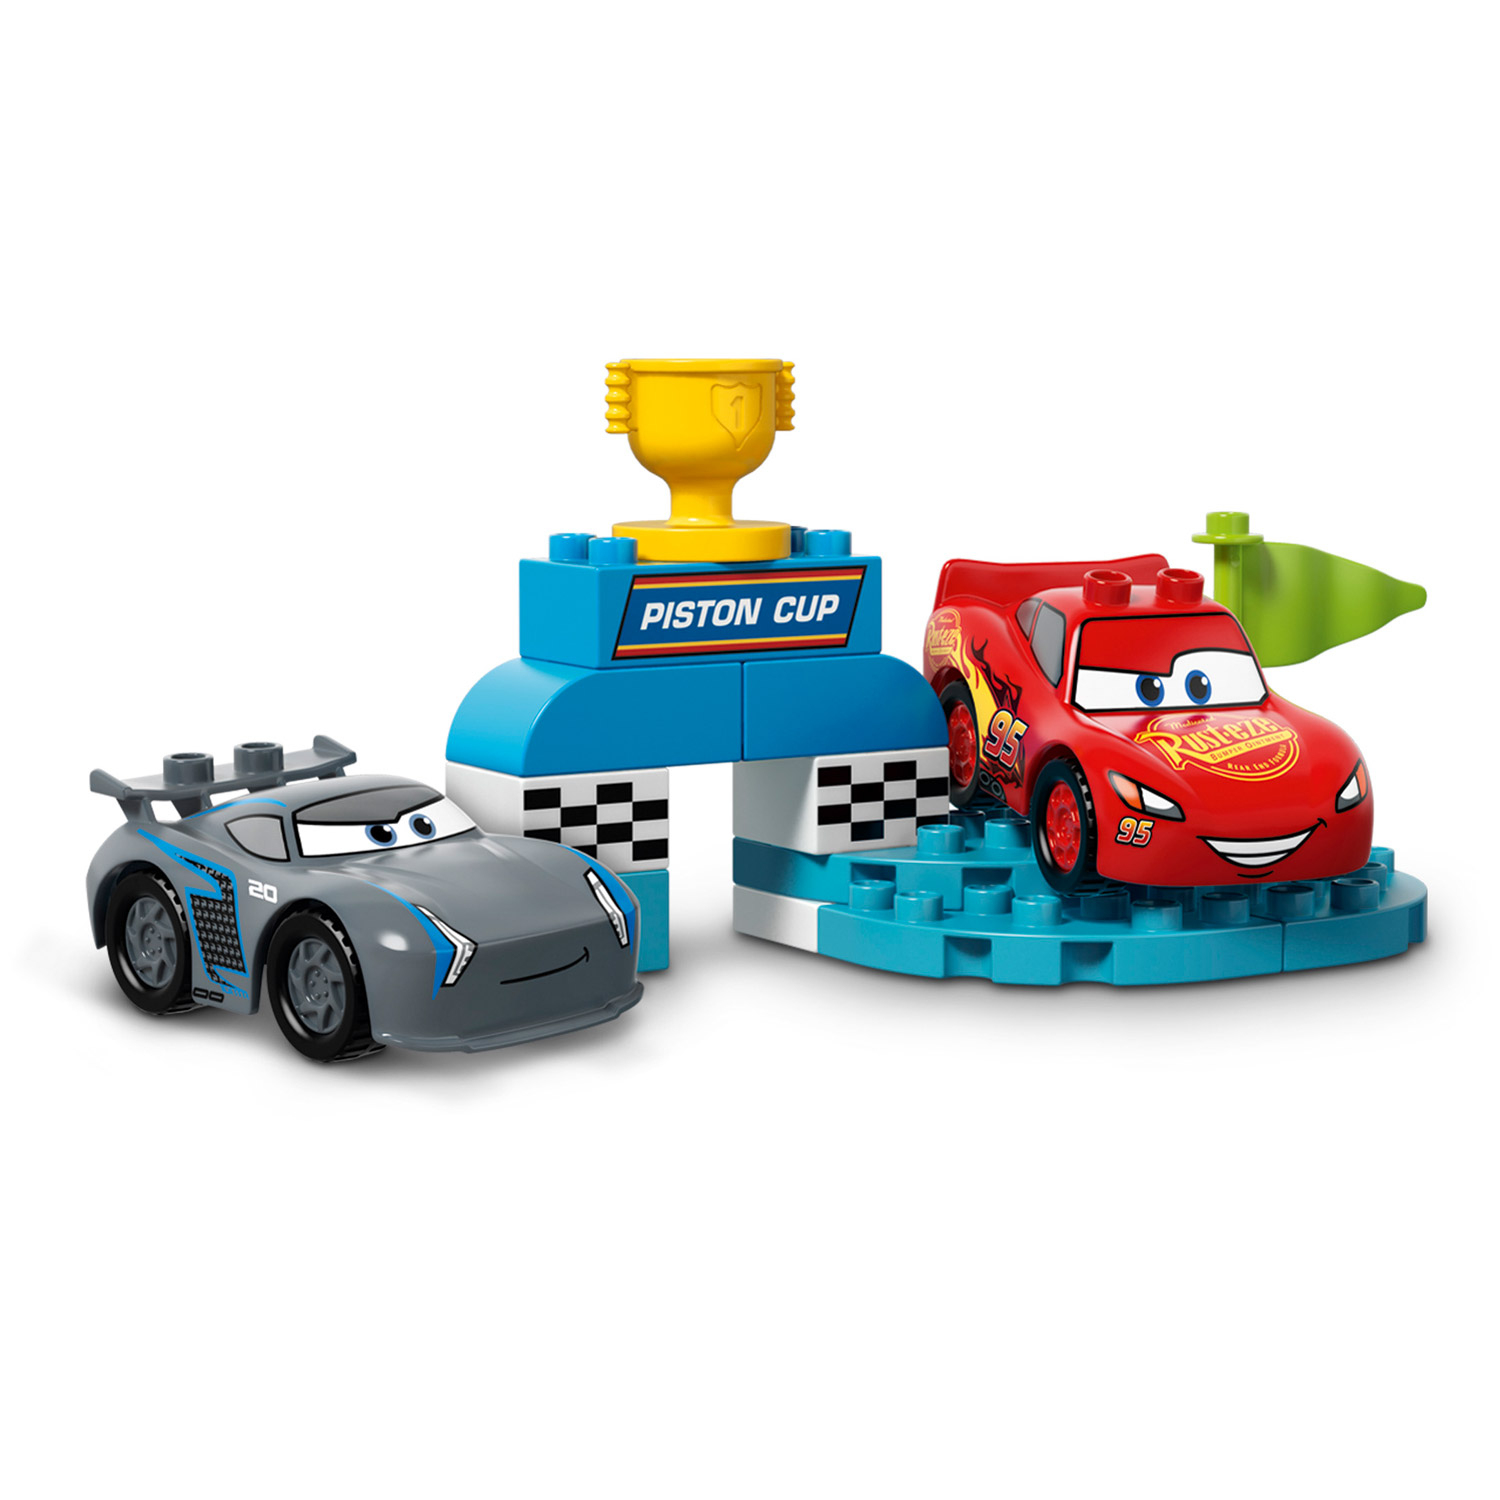 Lego® 10857 Duplo® : Cars 3™: La Course De La Piston Cup encequiconcerne Reglement Jeu Cars Piston